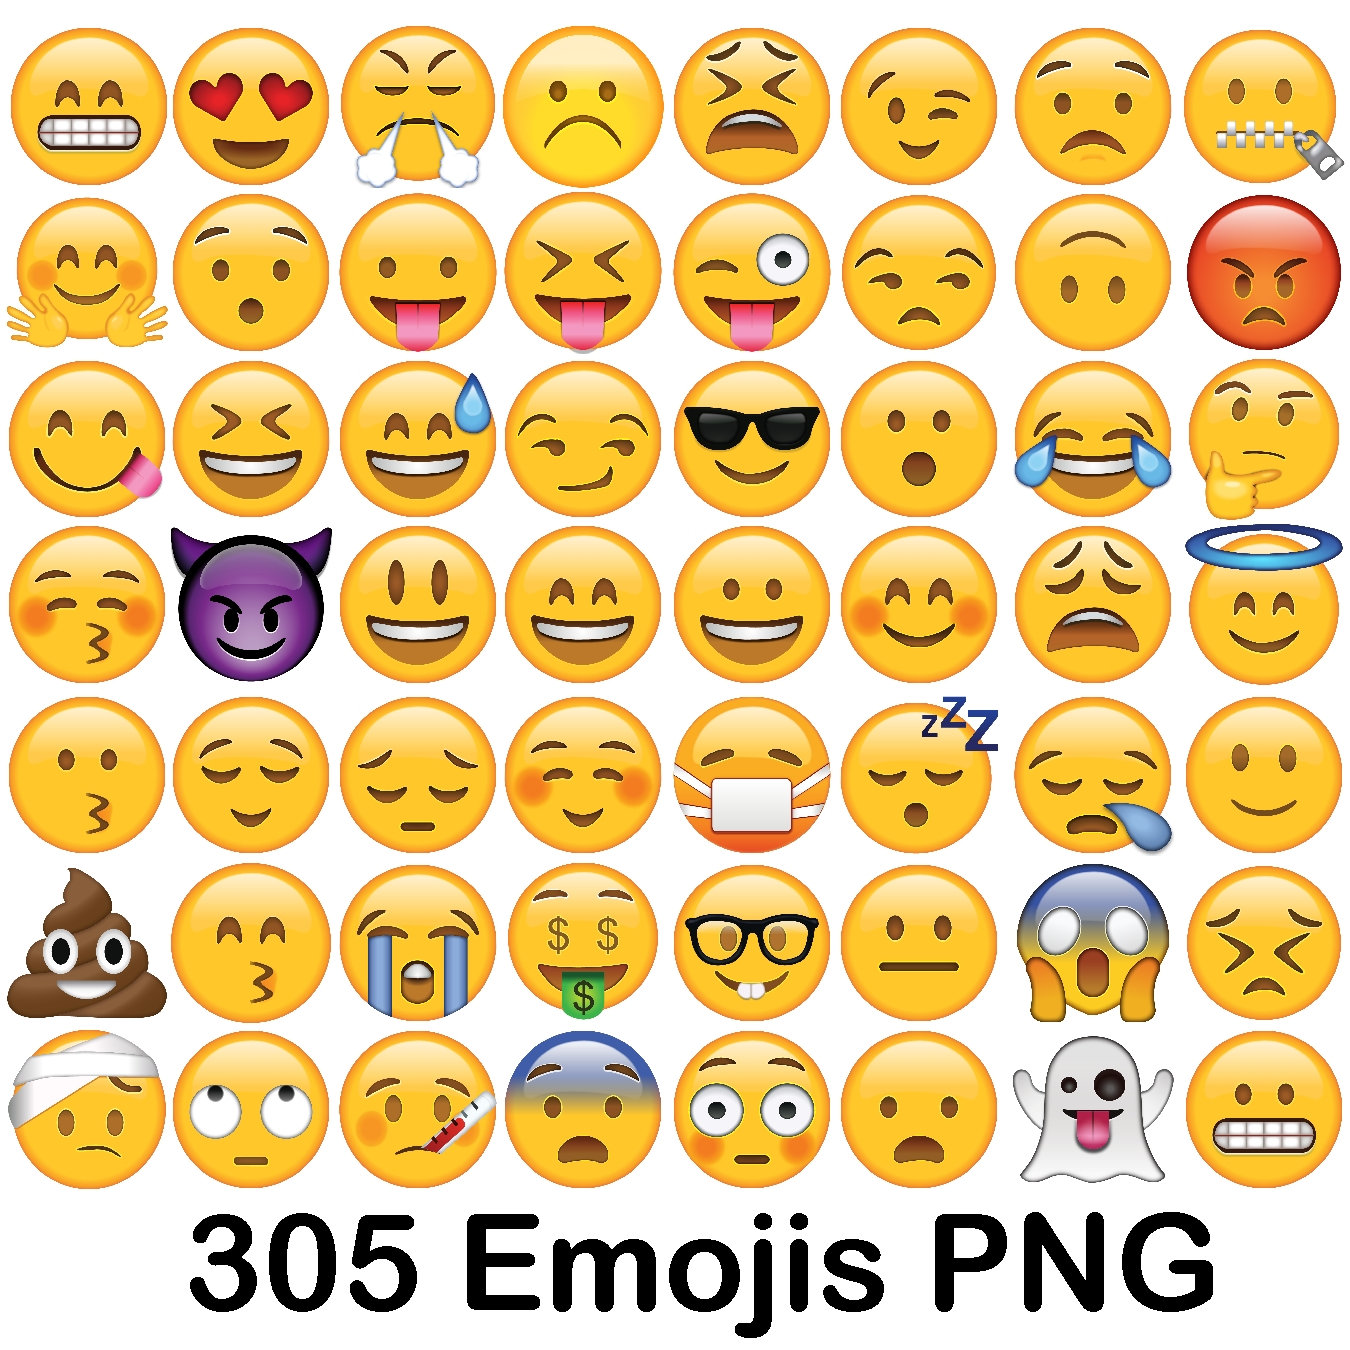 Download Emoji Clipart, Emoji Smileys, Smiley Vector, Emojis, Emoji ...